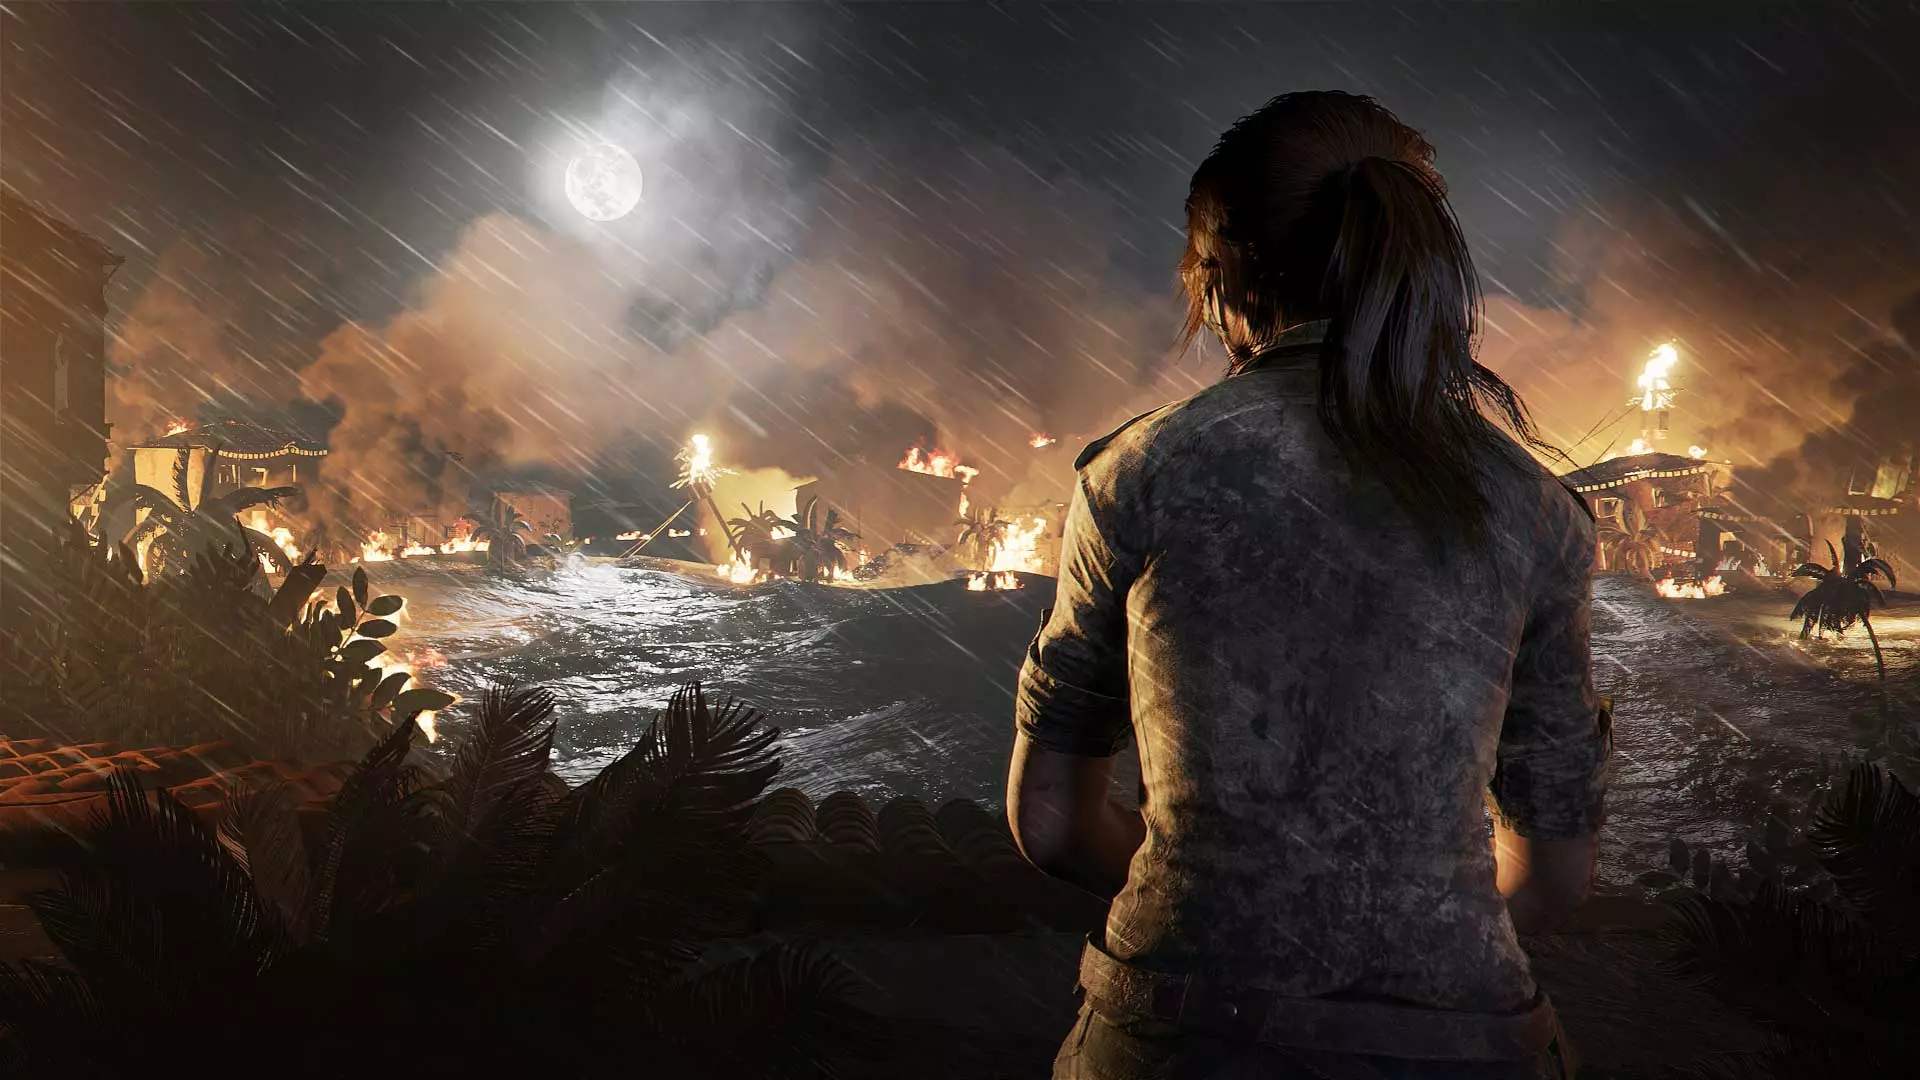 لارا کرافت در بازی Shadow of the Tomb Raider استودیو ایداس مونترآل شرکت اسکوئر انیکس